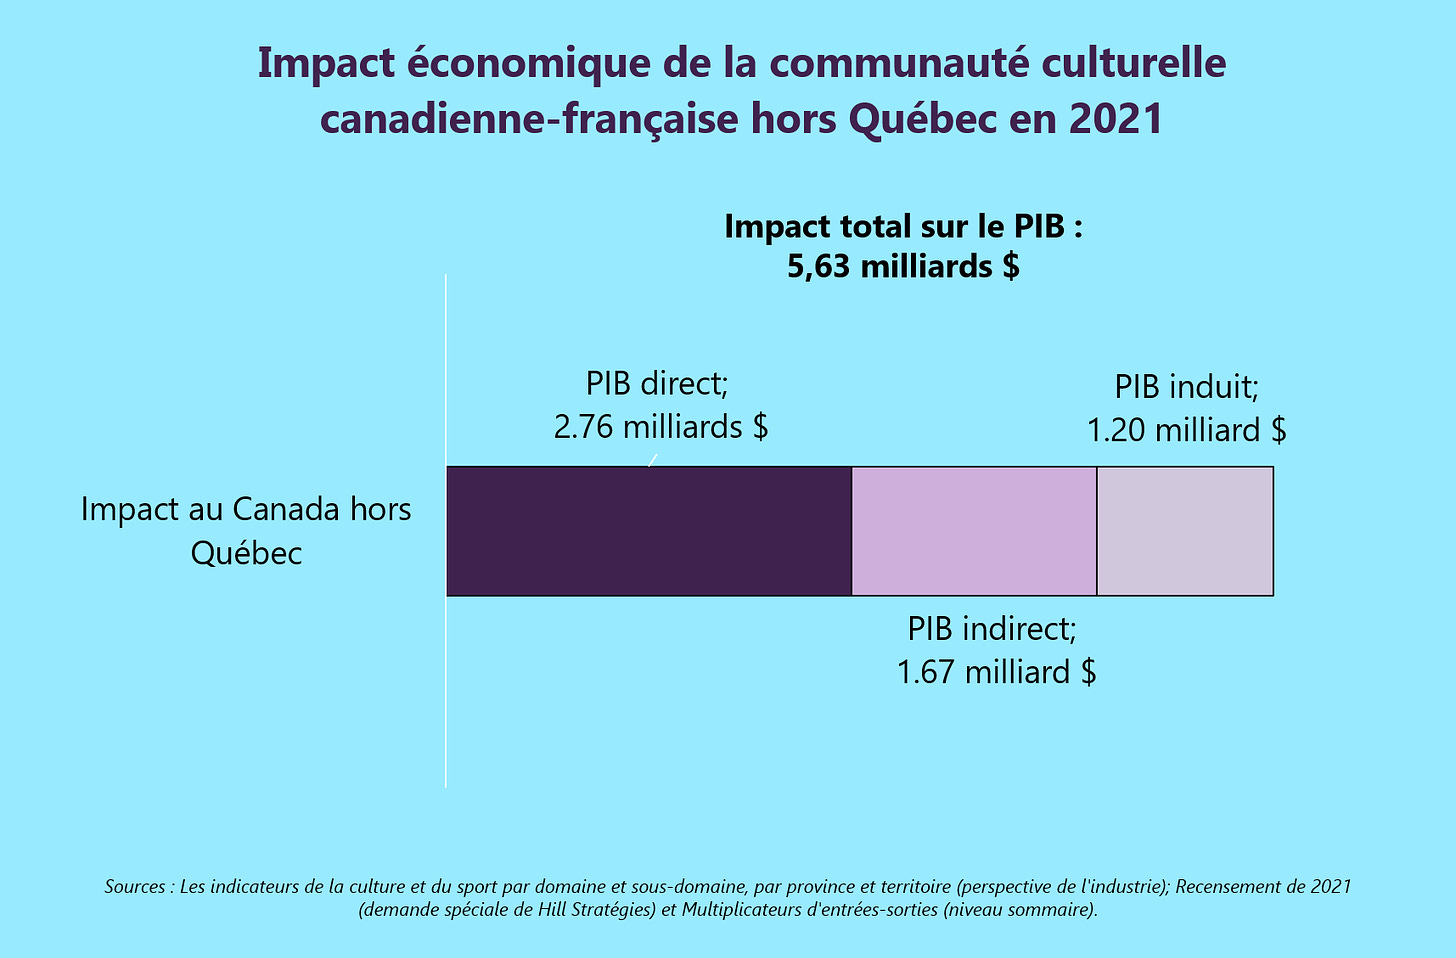 Graphique montrant l'impact économique de la communauté culturelle canadienne-française hors Québec en 2021.